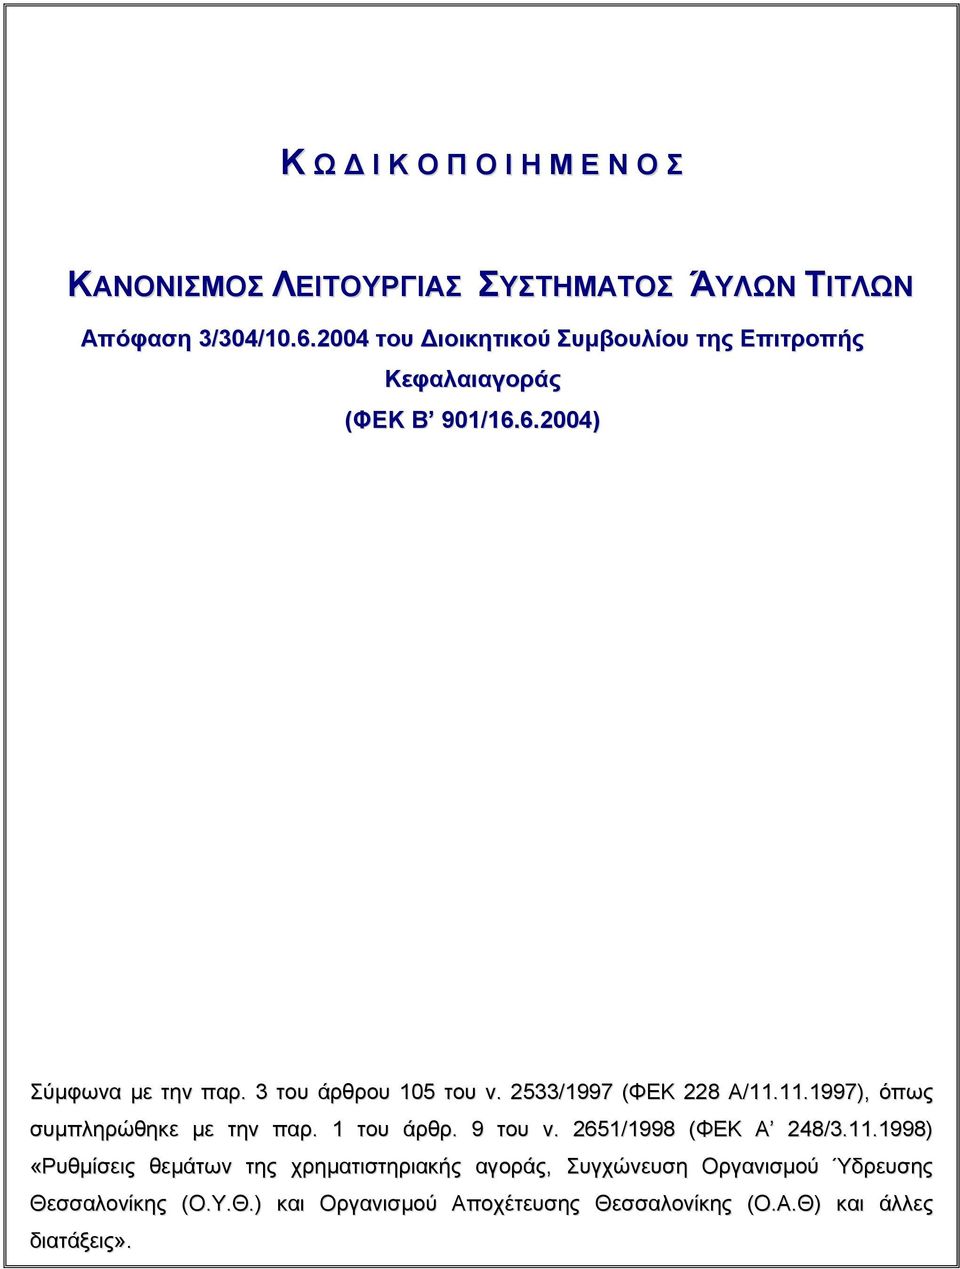 2533/1997 (ΦΕΚ 228 Α/11.11.1997), όπως συμπληρώθηκε με την παρ. 1 του άρθρ. 9 του ν. 2651/1998 (ΦΕΚ Α 248/3.11.1998) «Ρυθμίσεις θεμάτων της χρηματιστηριακής αγοράς, Συγχώνευση Οργανισμού Ύδρευσης Θεσσαλονίκης (Ο.